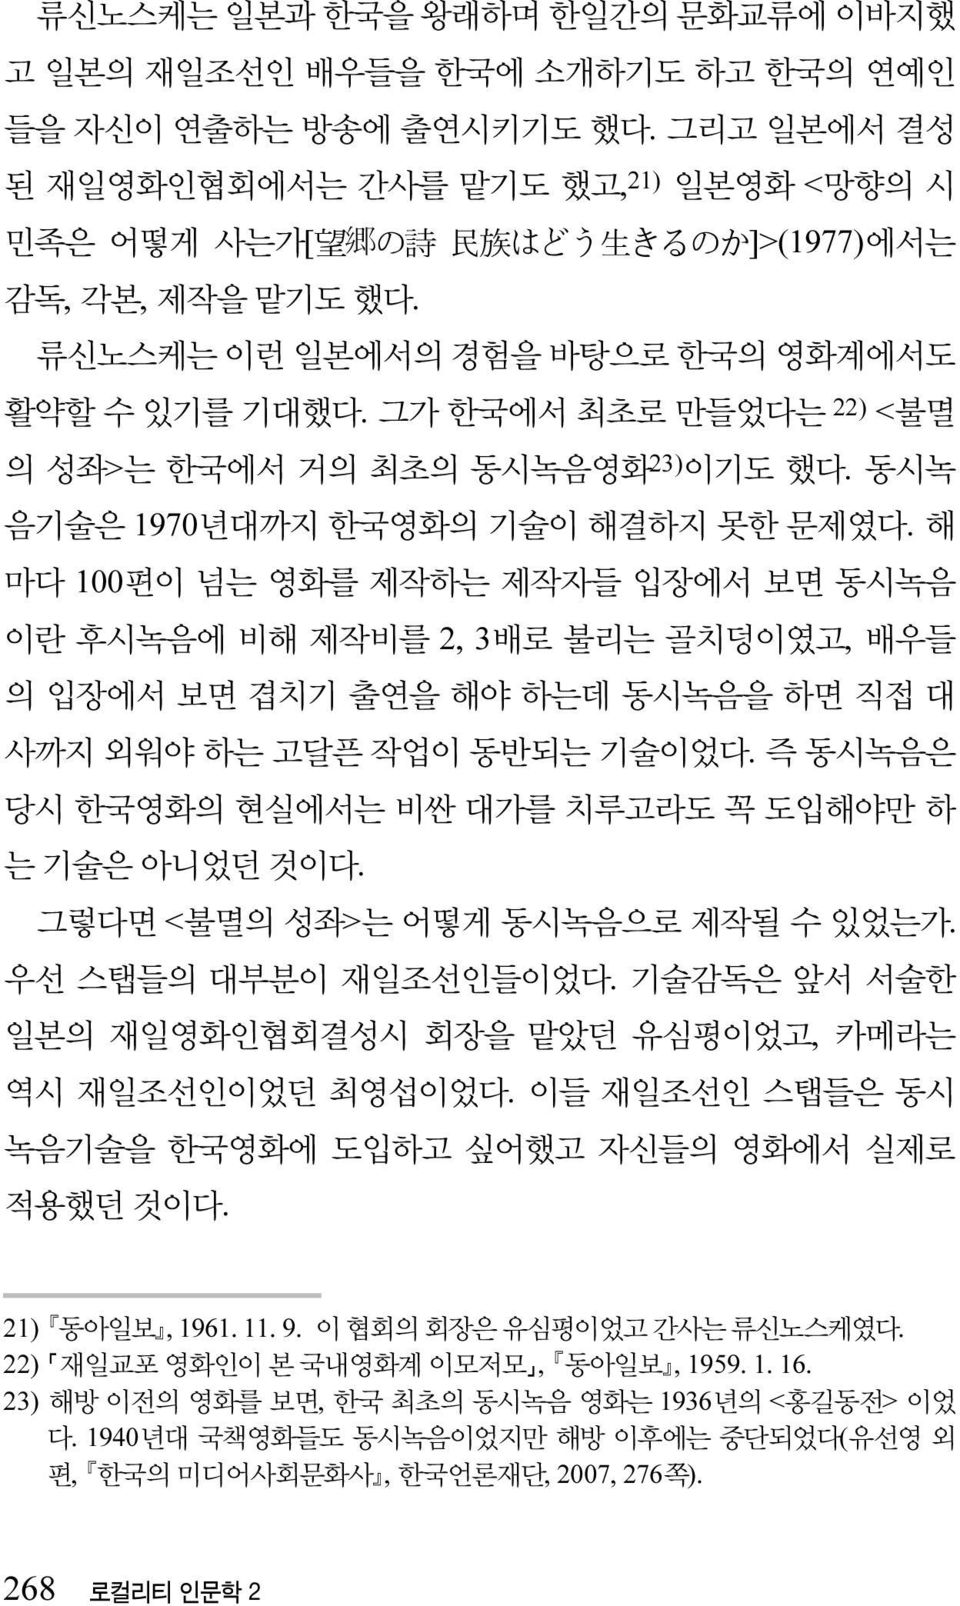 그가 한국에서 최초로 만들었다는 22) <불멸 의 성좌>는 한국에서 거의 최초의 동시녹음영화 23) 이기도 했다. 동시녹 음기술은 1970년대까지 한국영화의 기술이 해결하지 못한 문제였다.